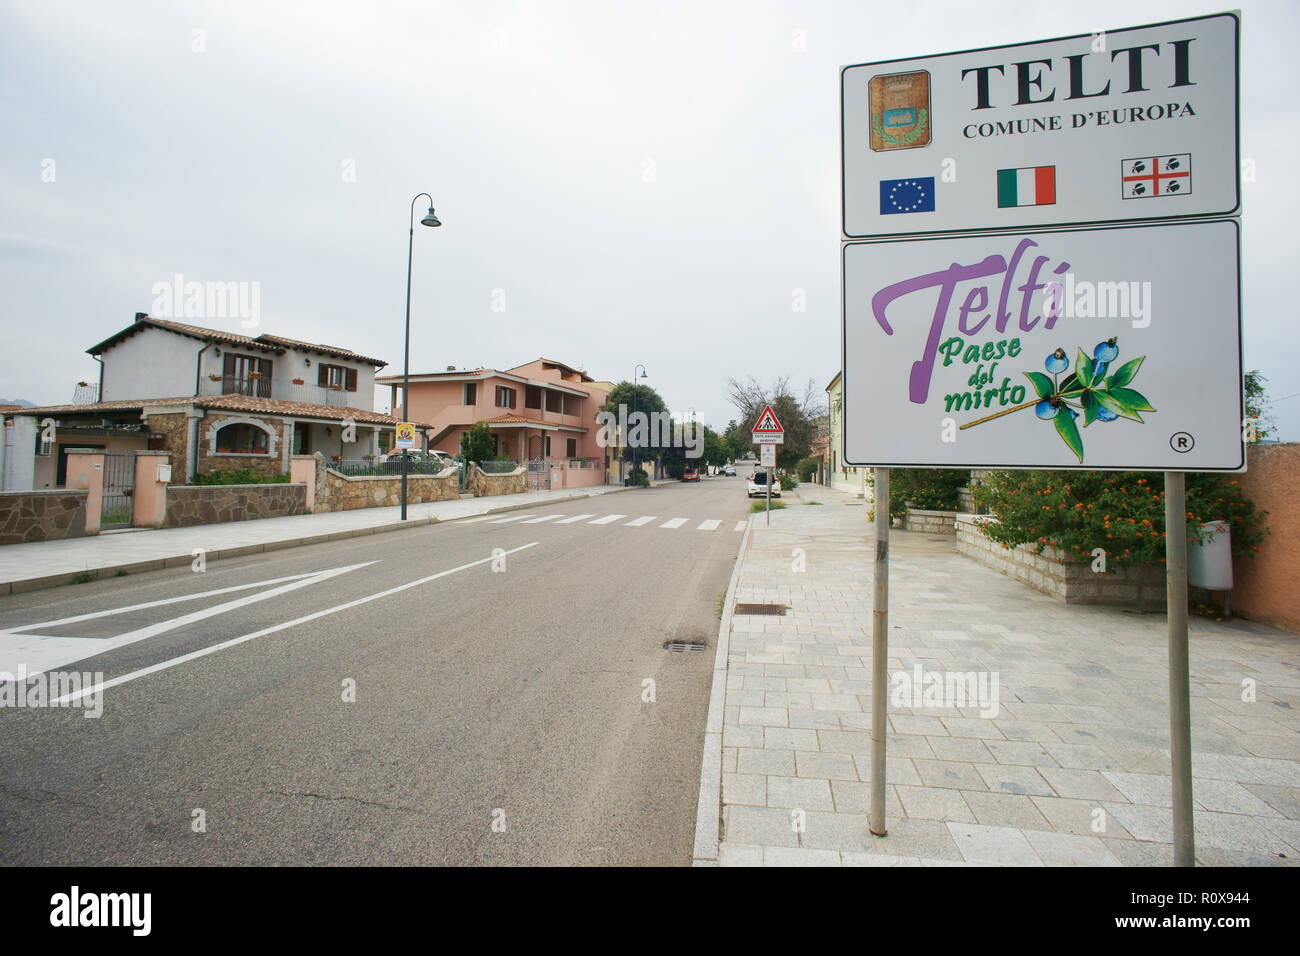 Telti, Stadt der Myrte, Street segnal, Gallura, Sardinien, Italien Stockfoto